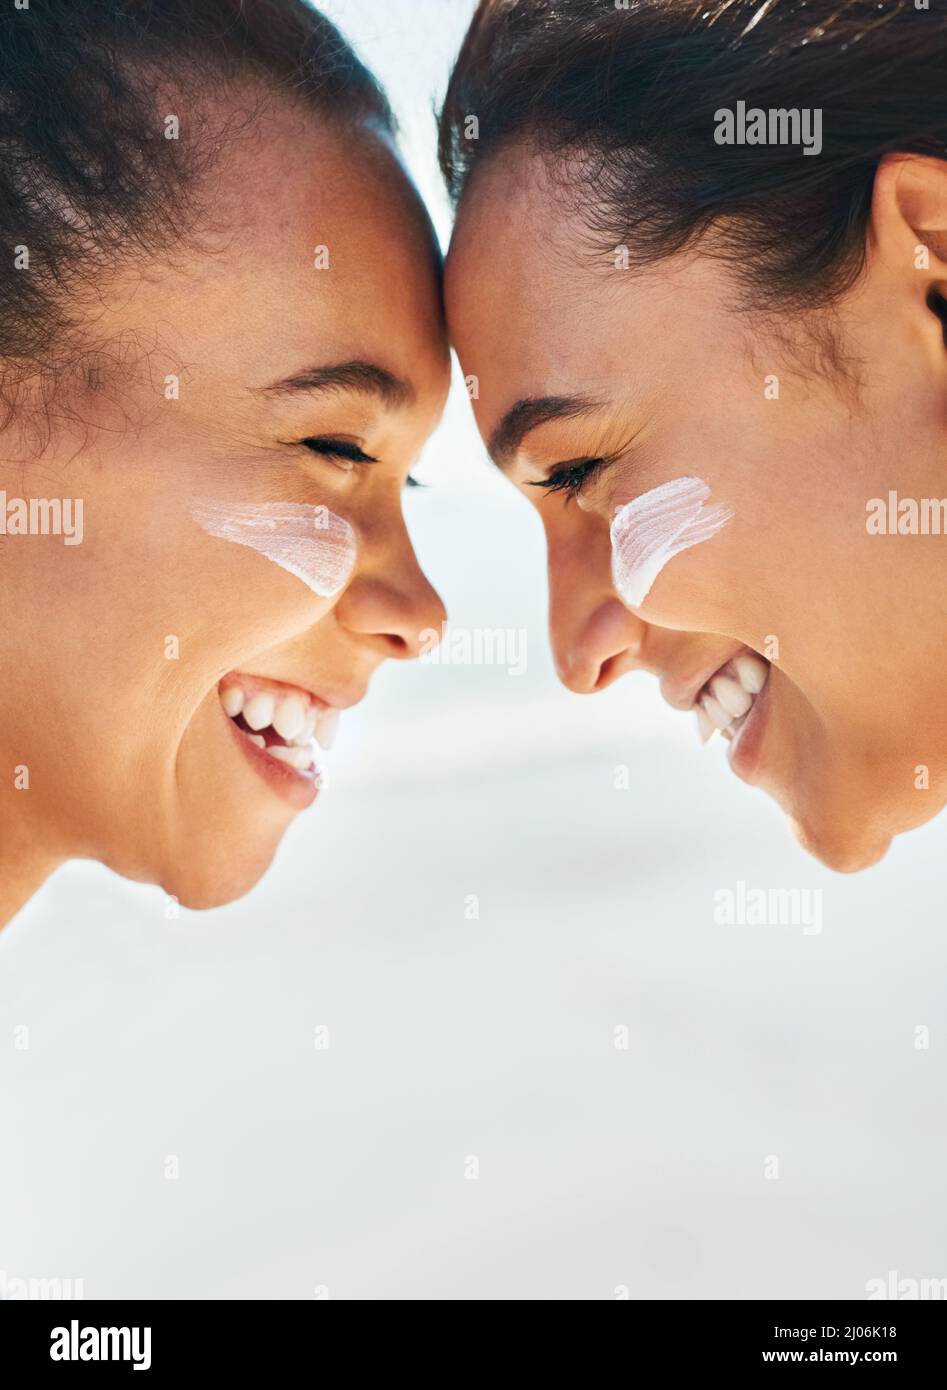 Sonnencreme - Bring die Erinnerungen zurück, nicht die Verbrennung. Aufnahme von zwei schönen jungen Frauen am Strand mit Sonnencreme im Gesicht, die sich gegenseitig anlächeln. Stockfoto